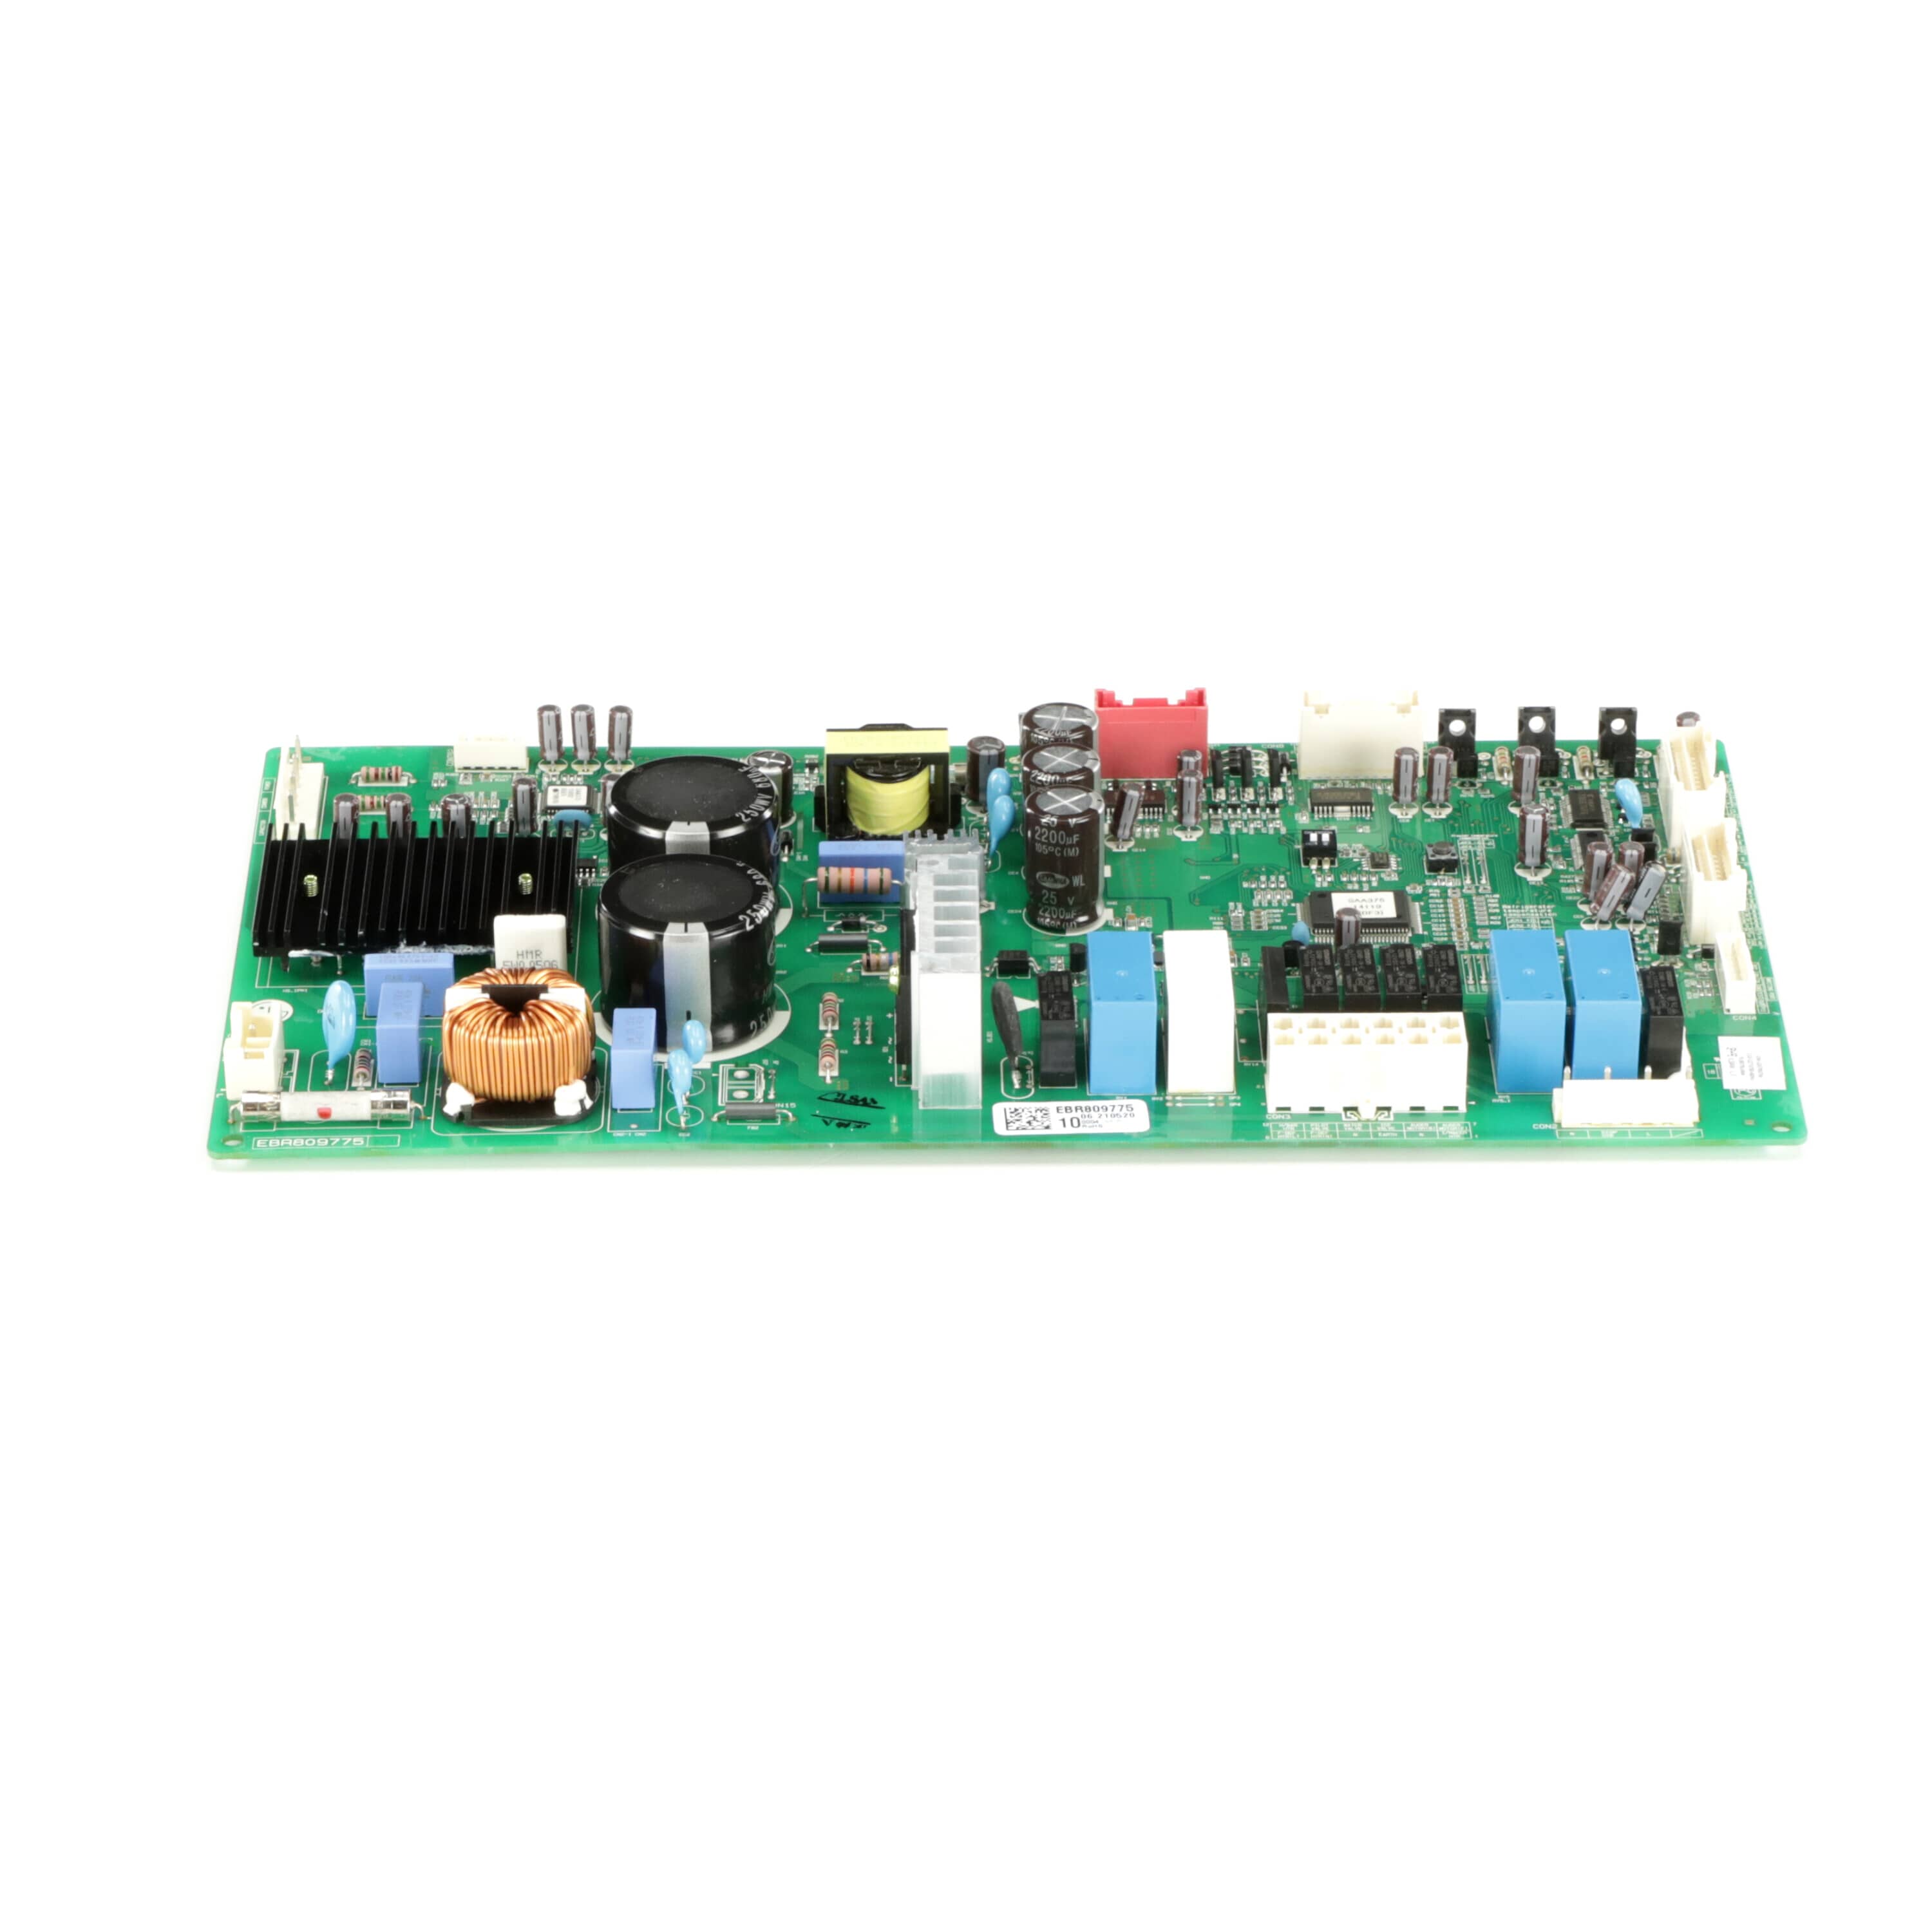 LG EBR80977510 Refrigerator Electronic Control Board